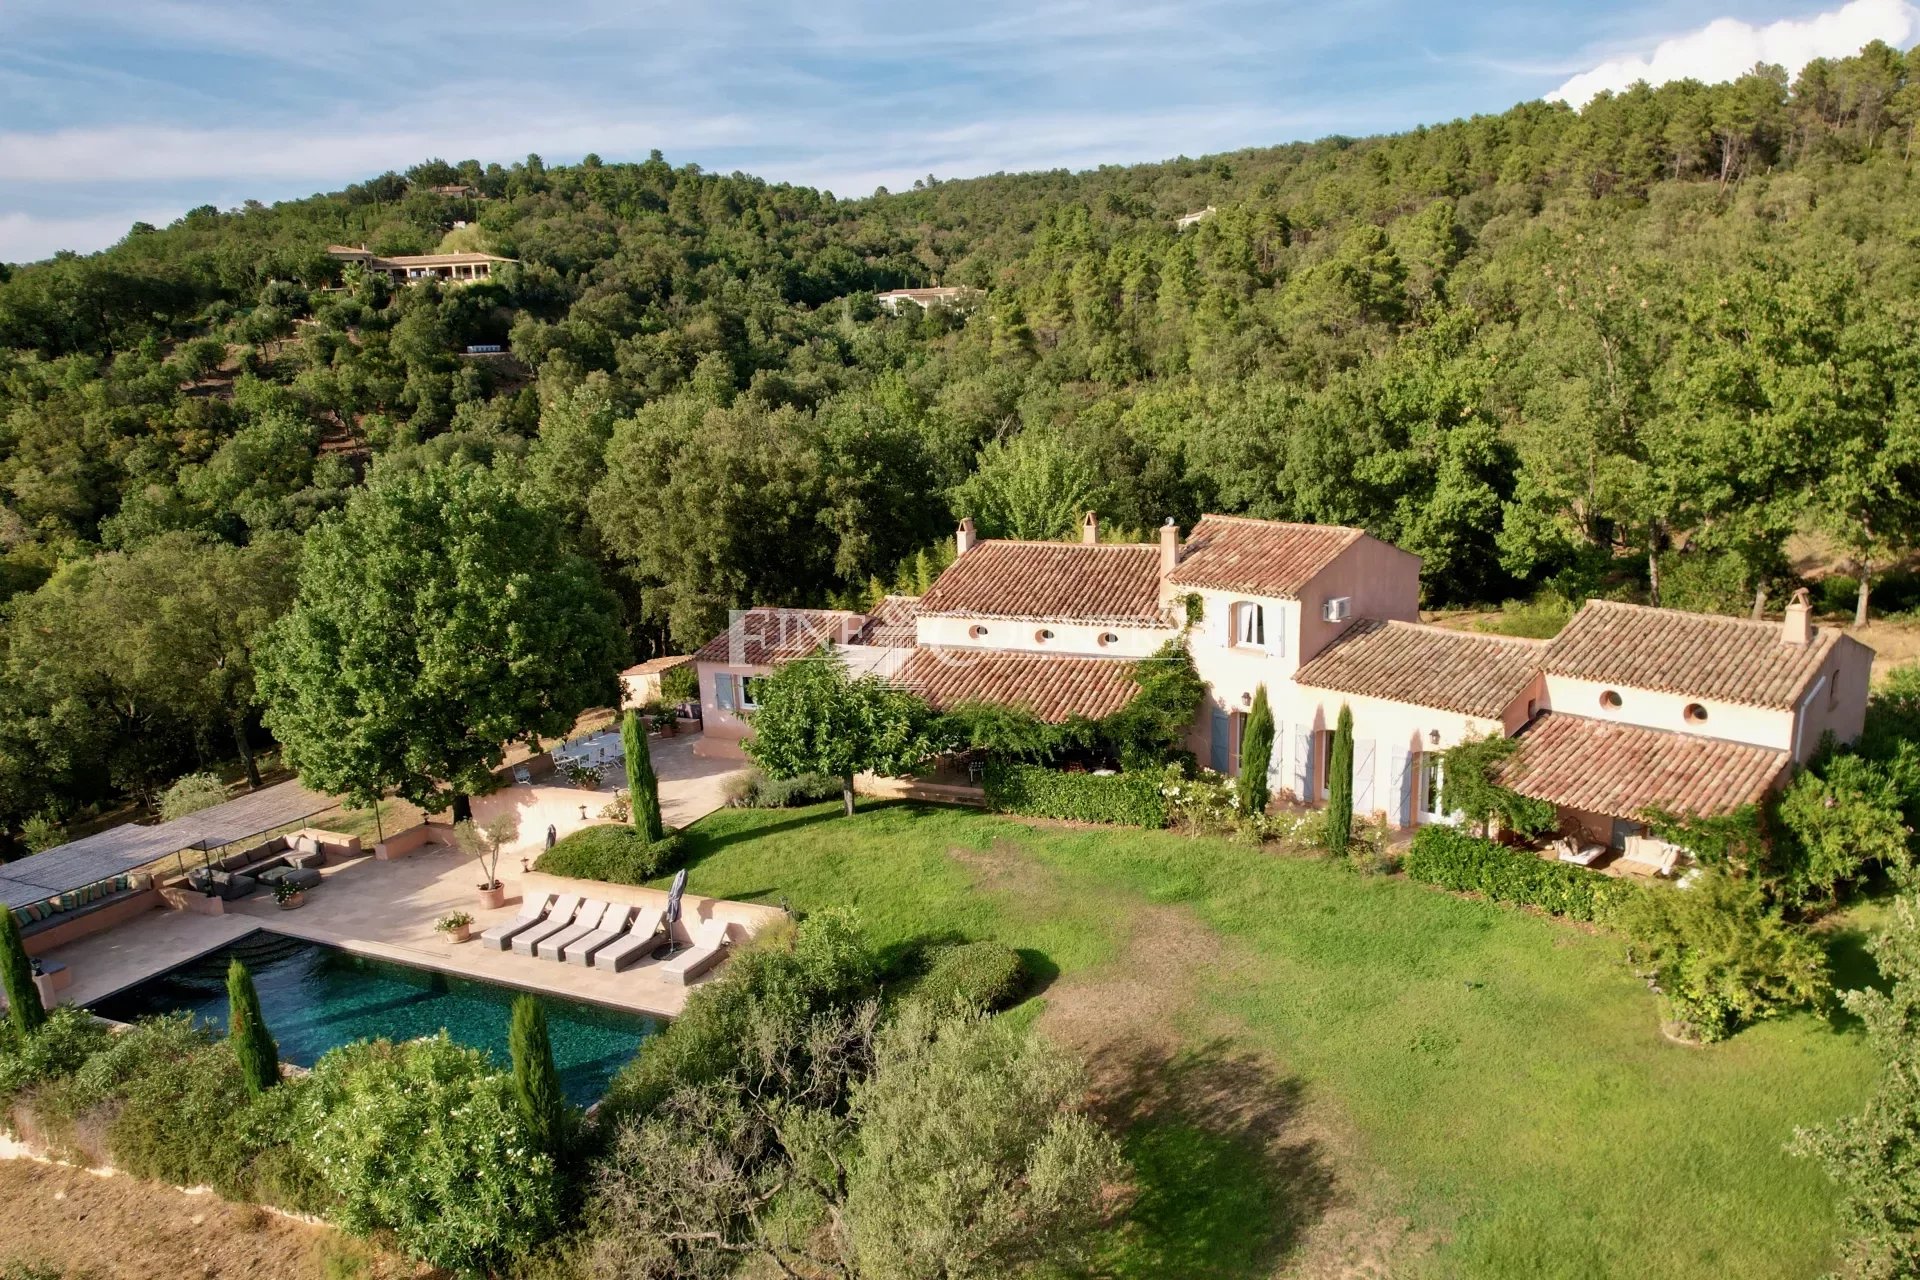 Villa For Sale in La Garde Freinet Accommodation in Cannes